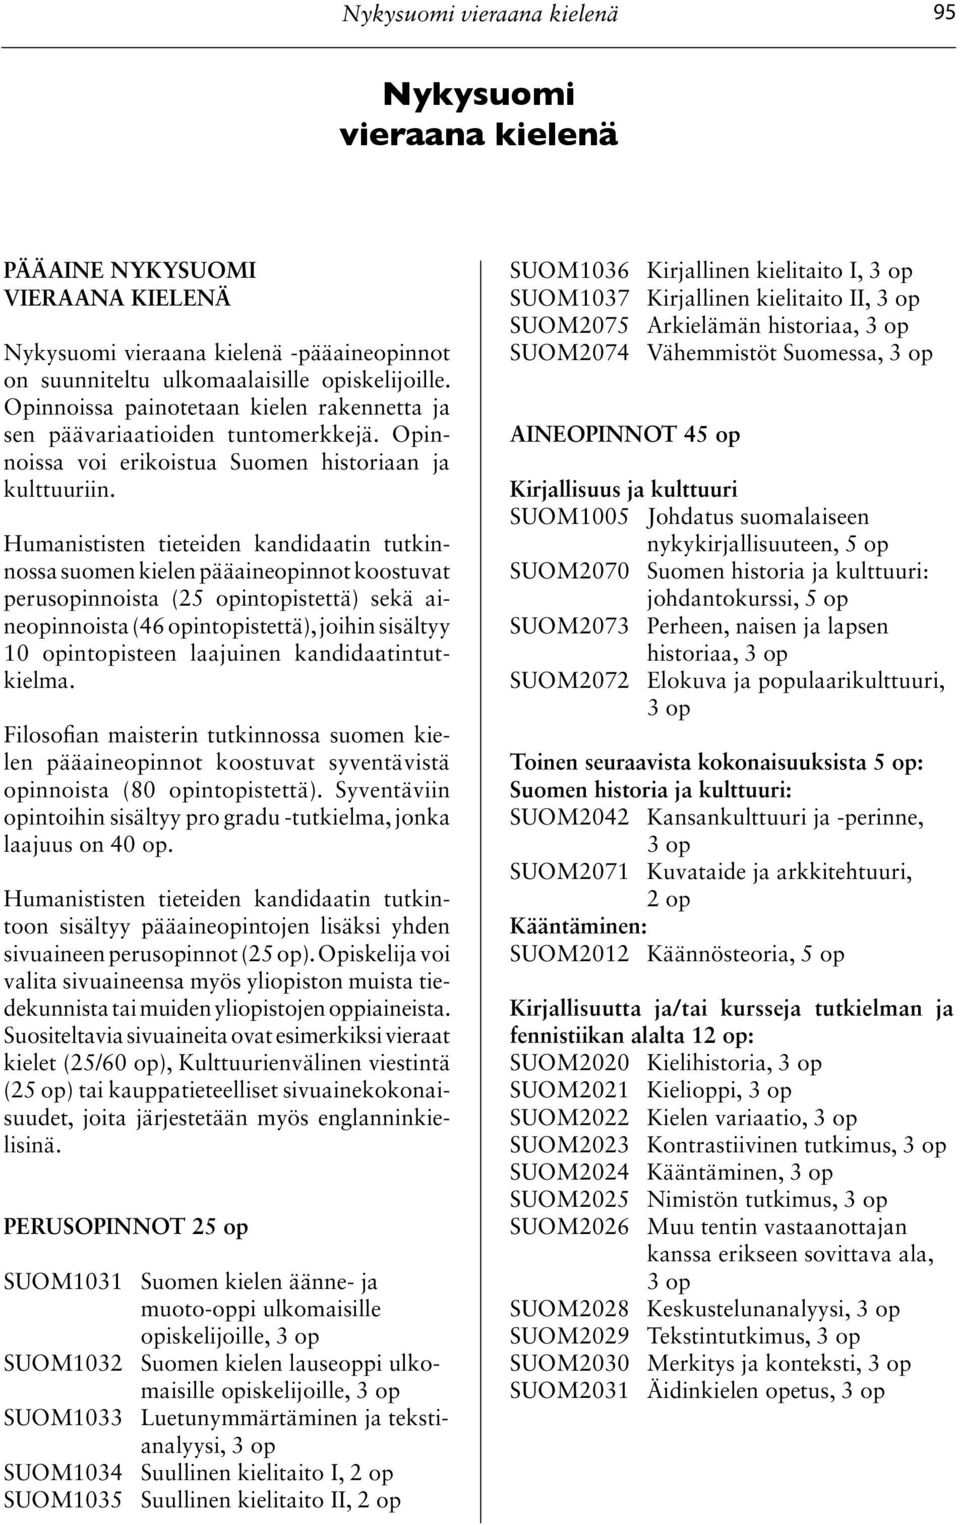 Humanististen tieteiden kandidaatin tutkinnossa suomen kielen pääaineopinnot koostuvat perusopinnoista (25 opintopistettä) sekä aineopinnoista (46 opintopistettä), joihin sisältyy 10 opintopisteen